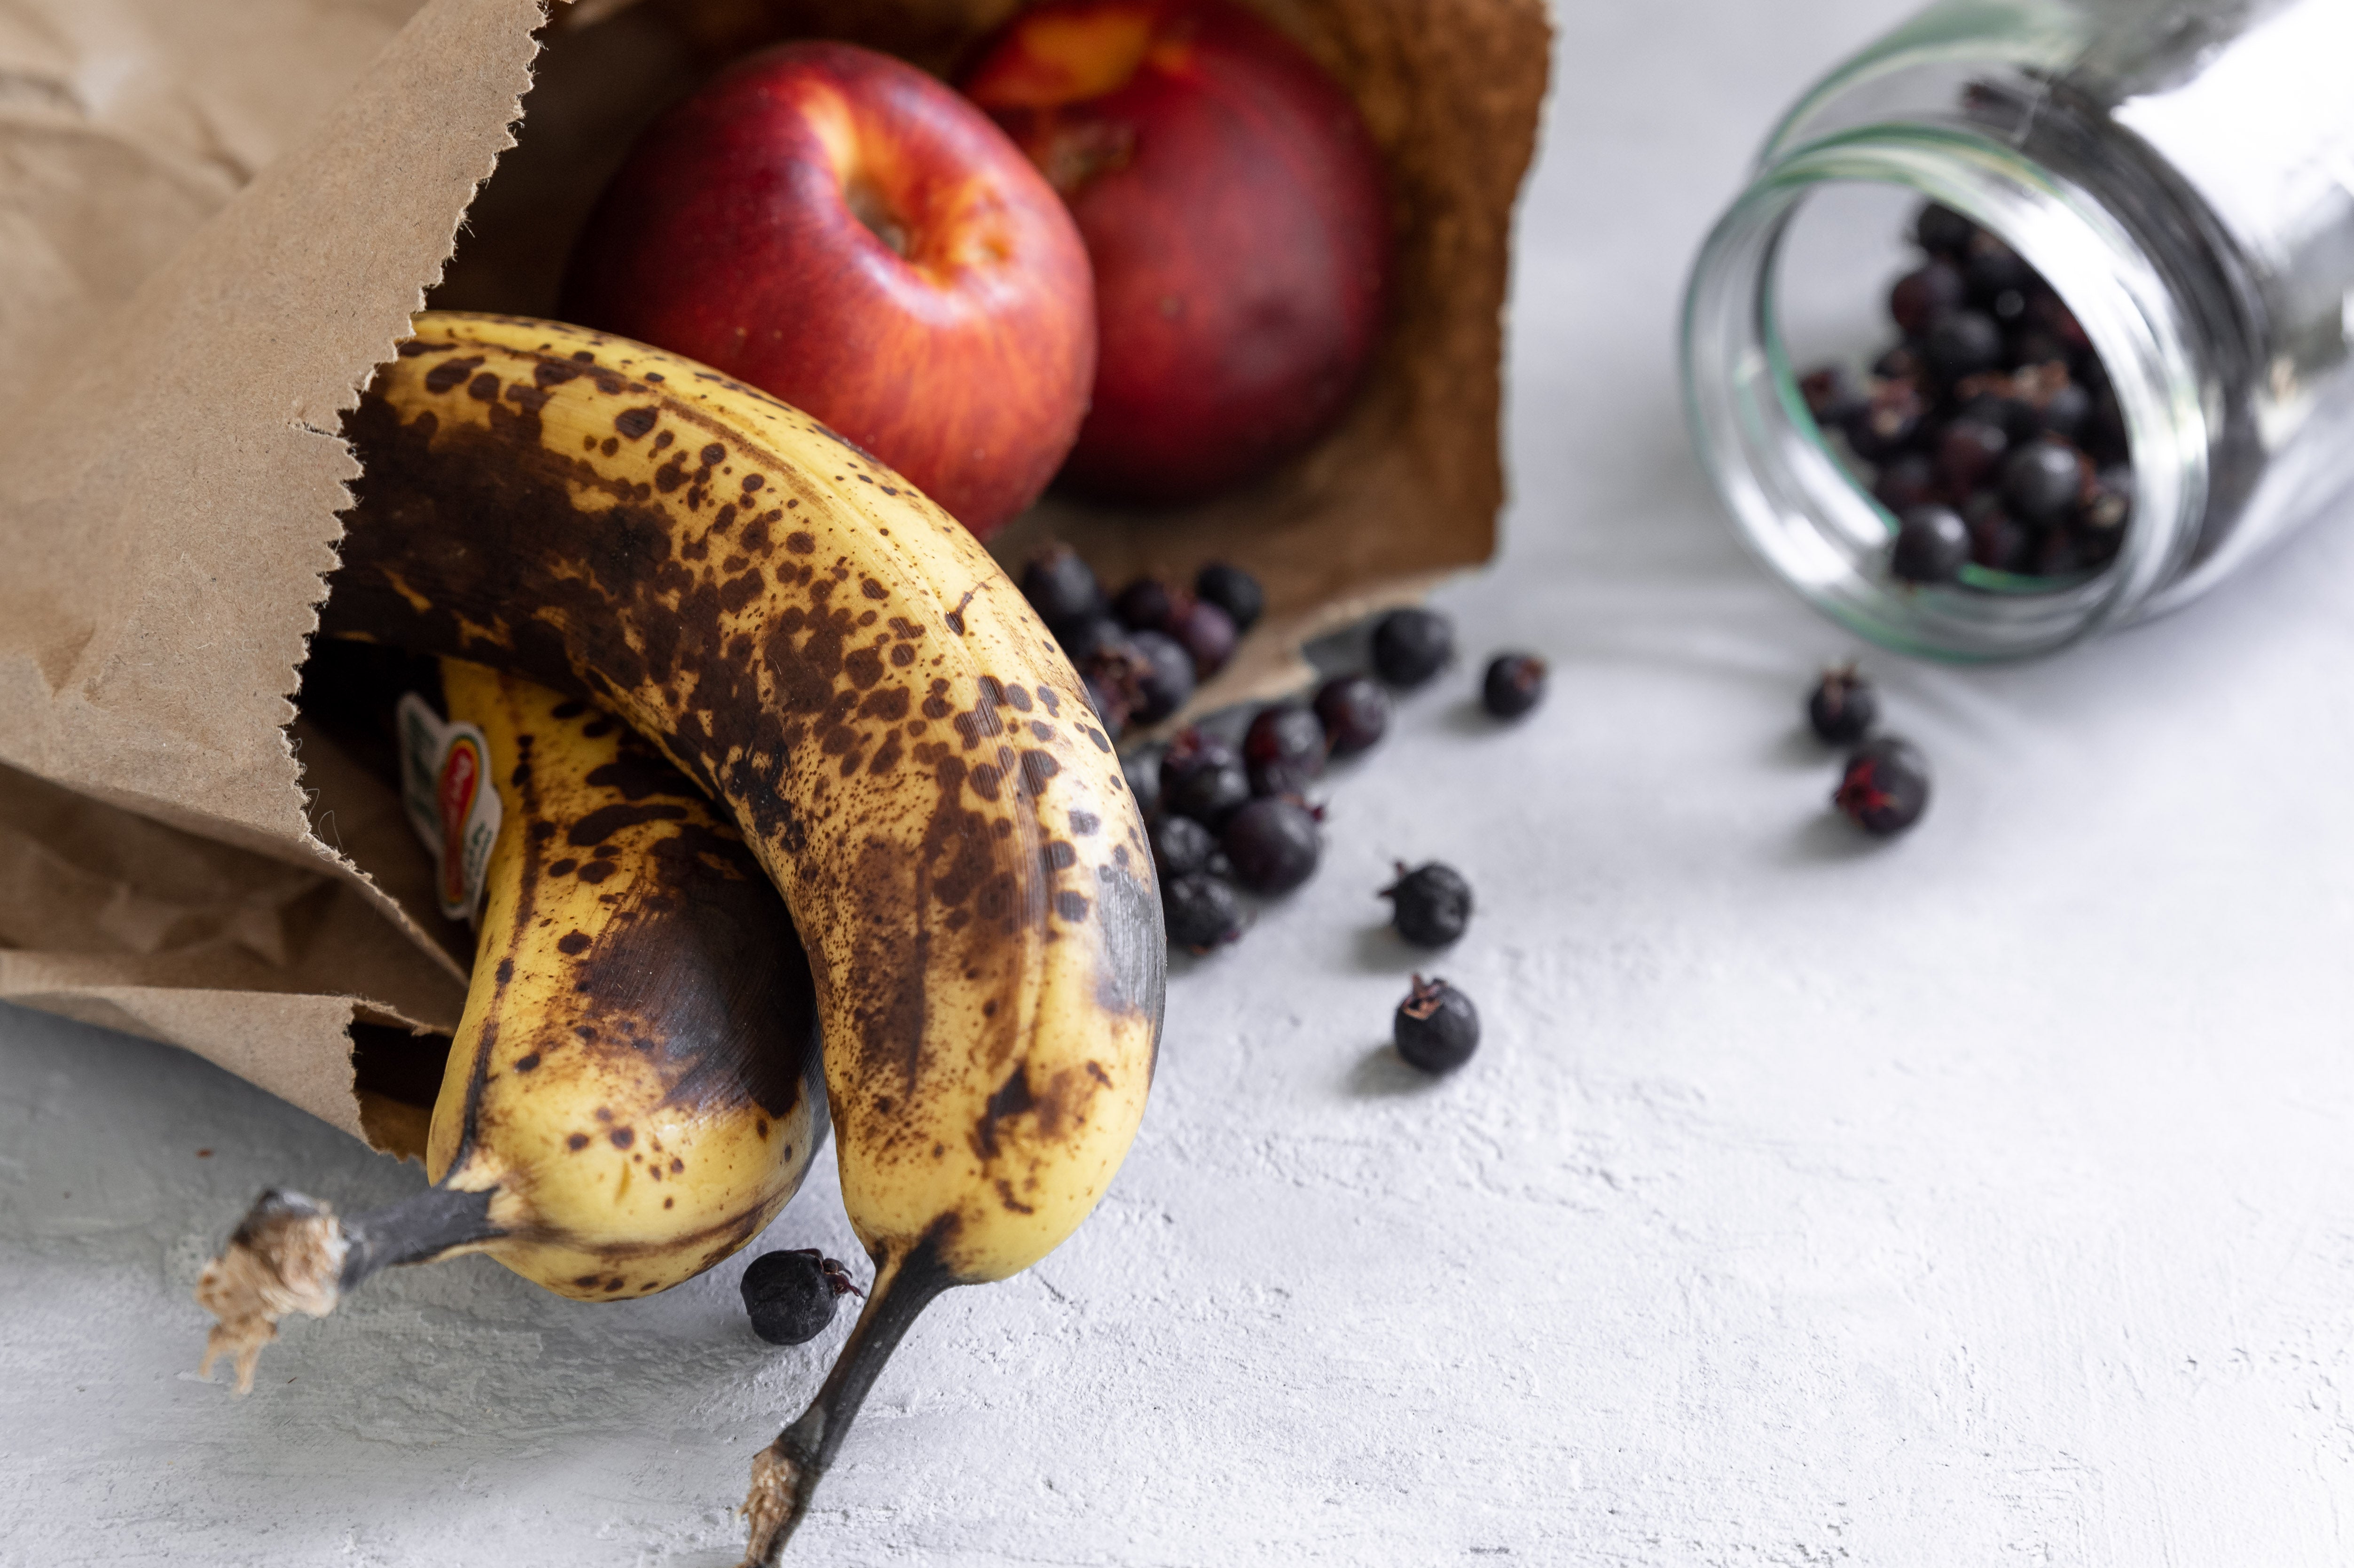 Comment conserver les bananes ? - Réfrigérateur ou température ambiante ?